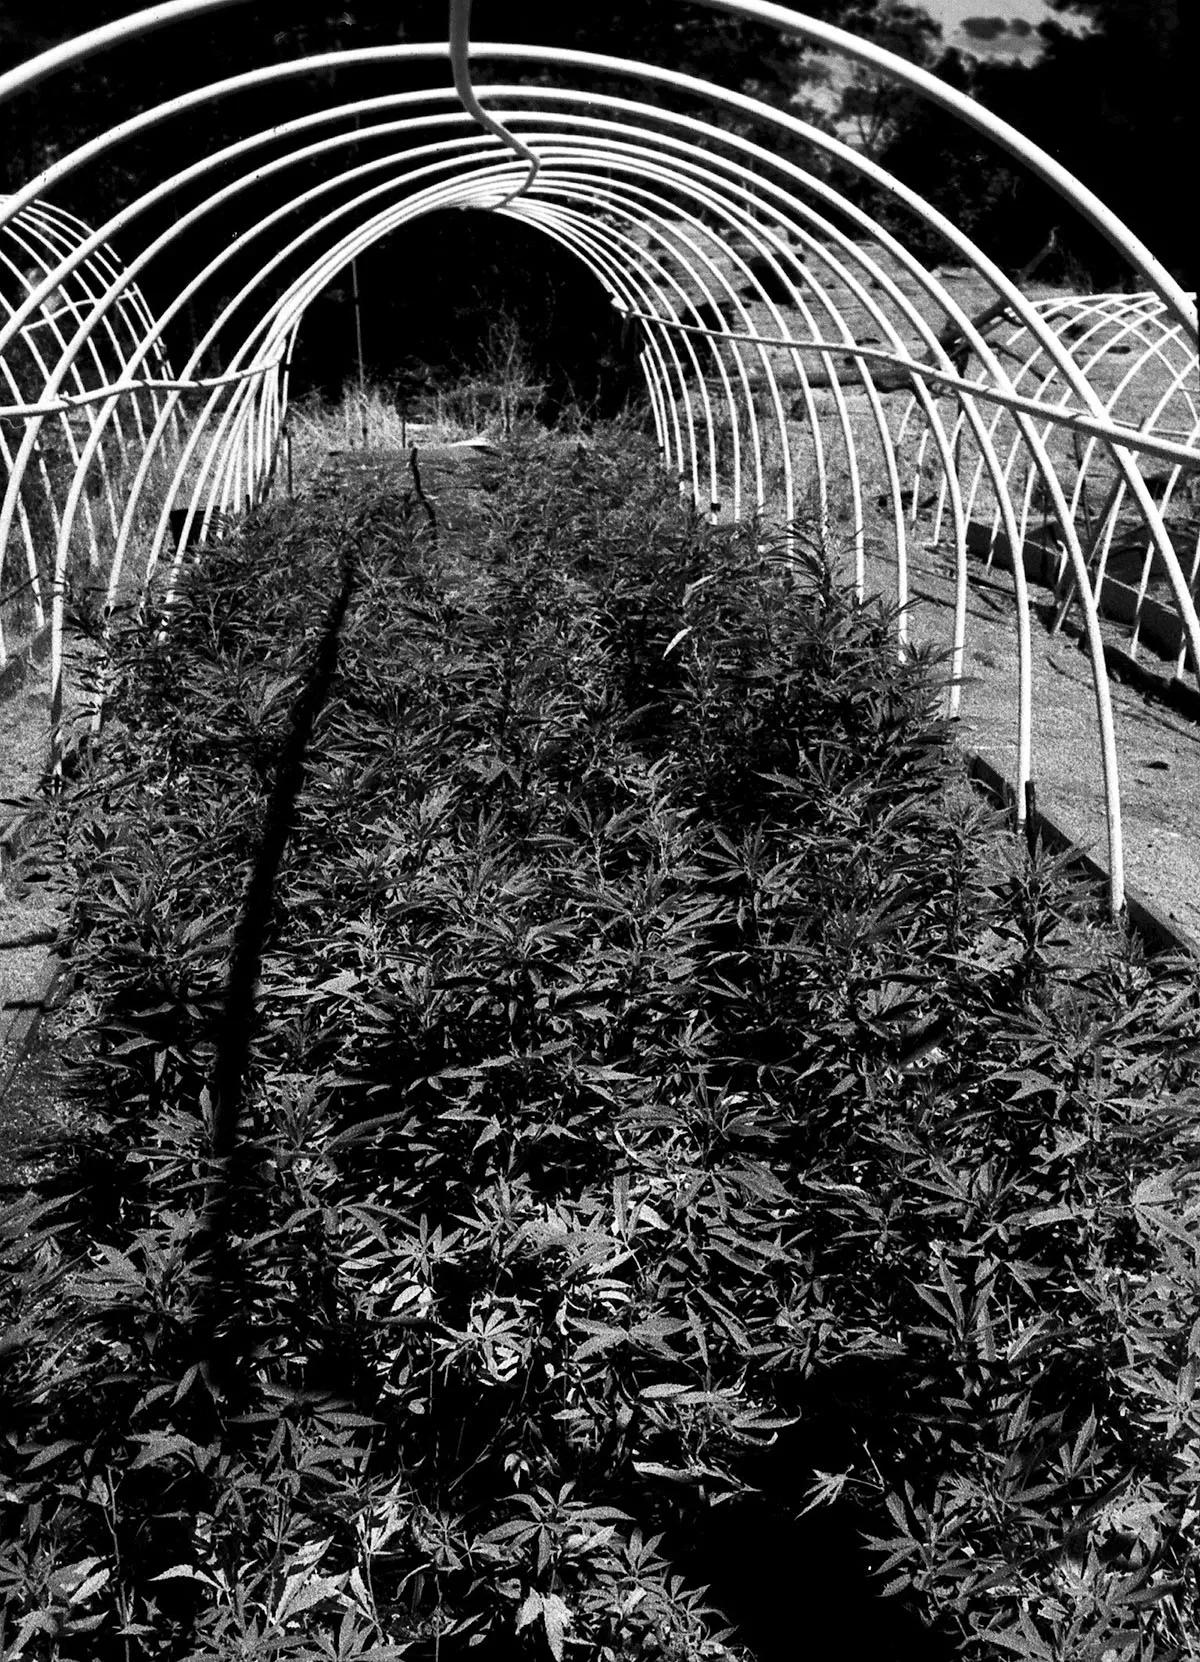 Plantación de cannabis